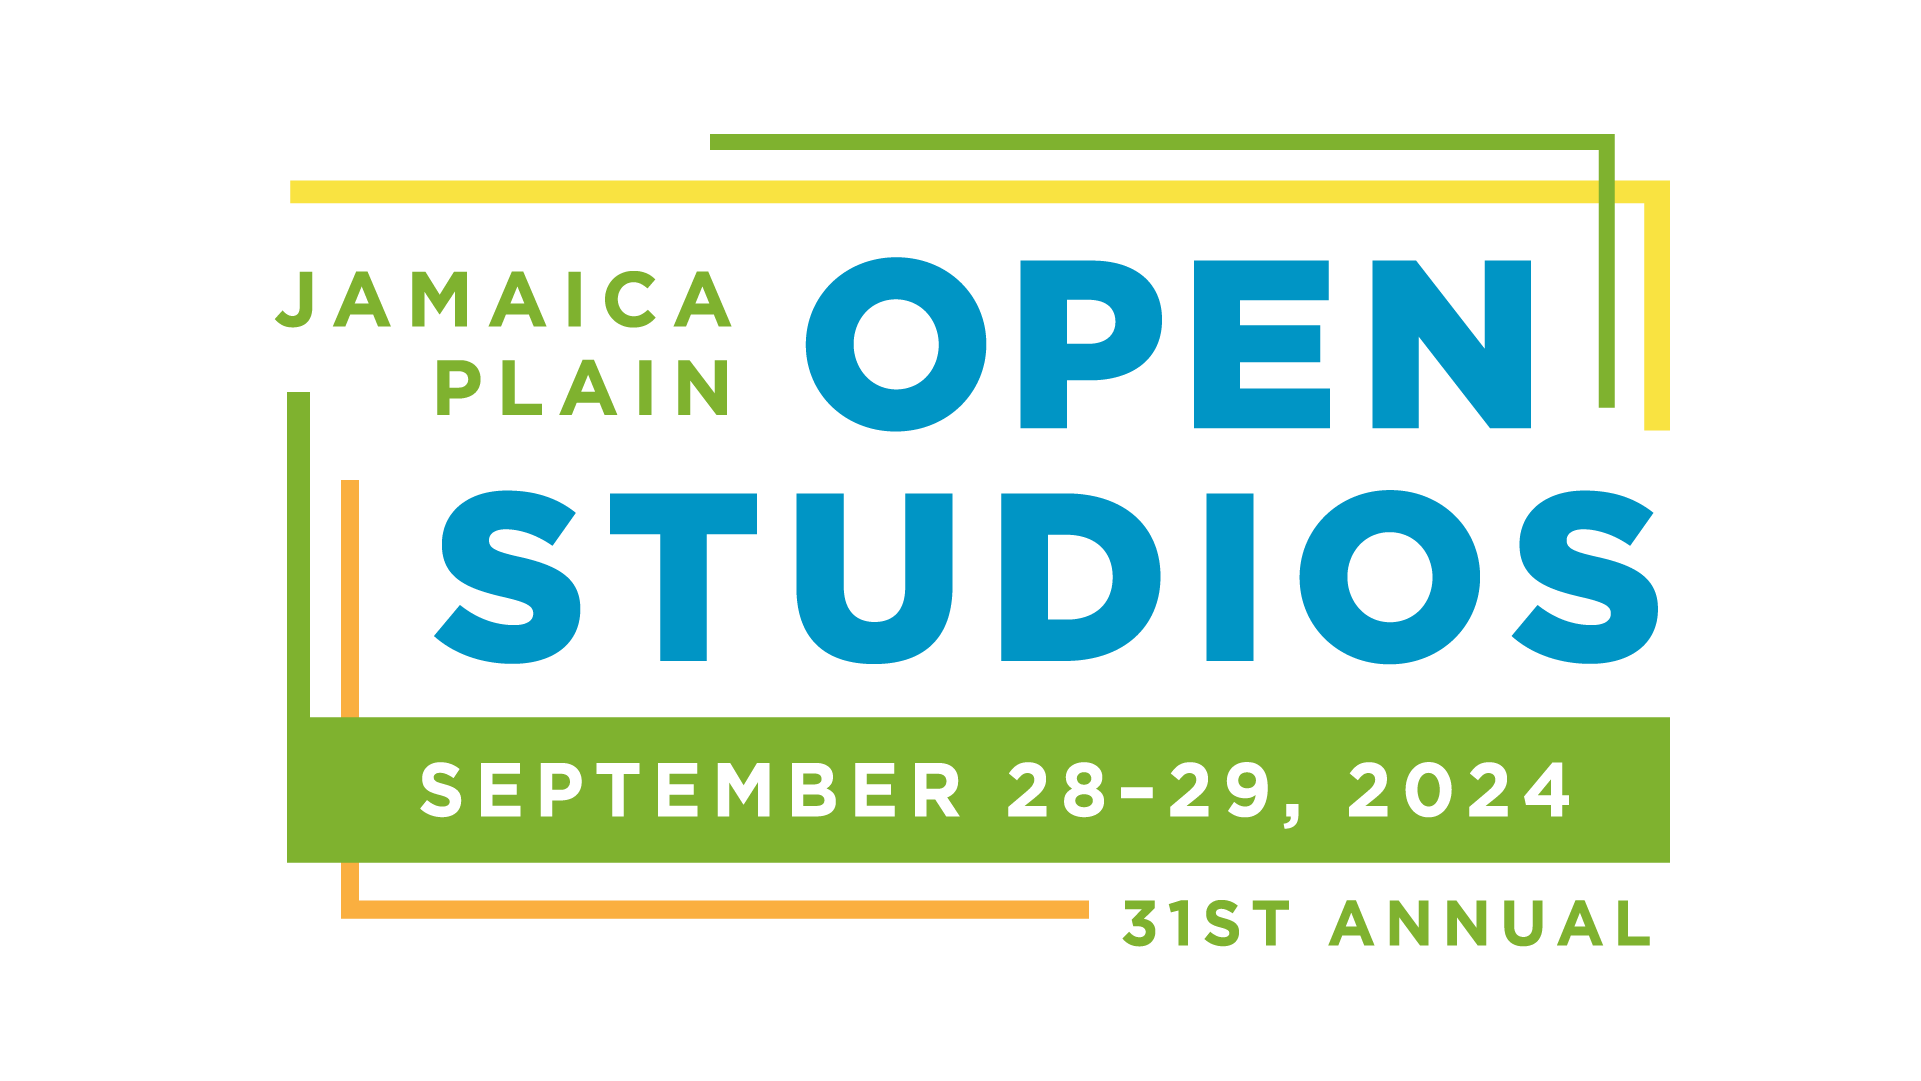 Jamaica Plain Open Studios, September 28-29, 2024. 31st Anniversary.